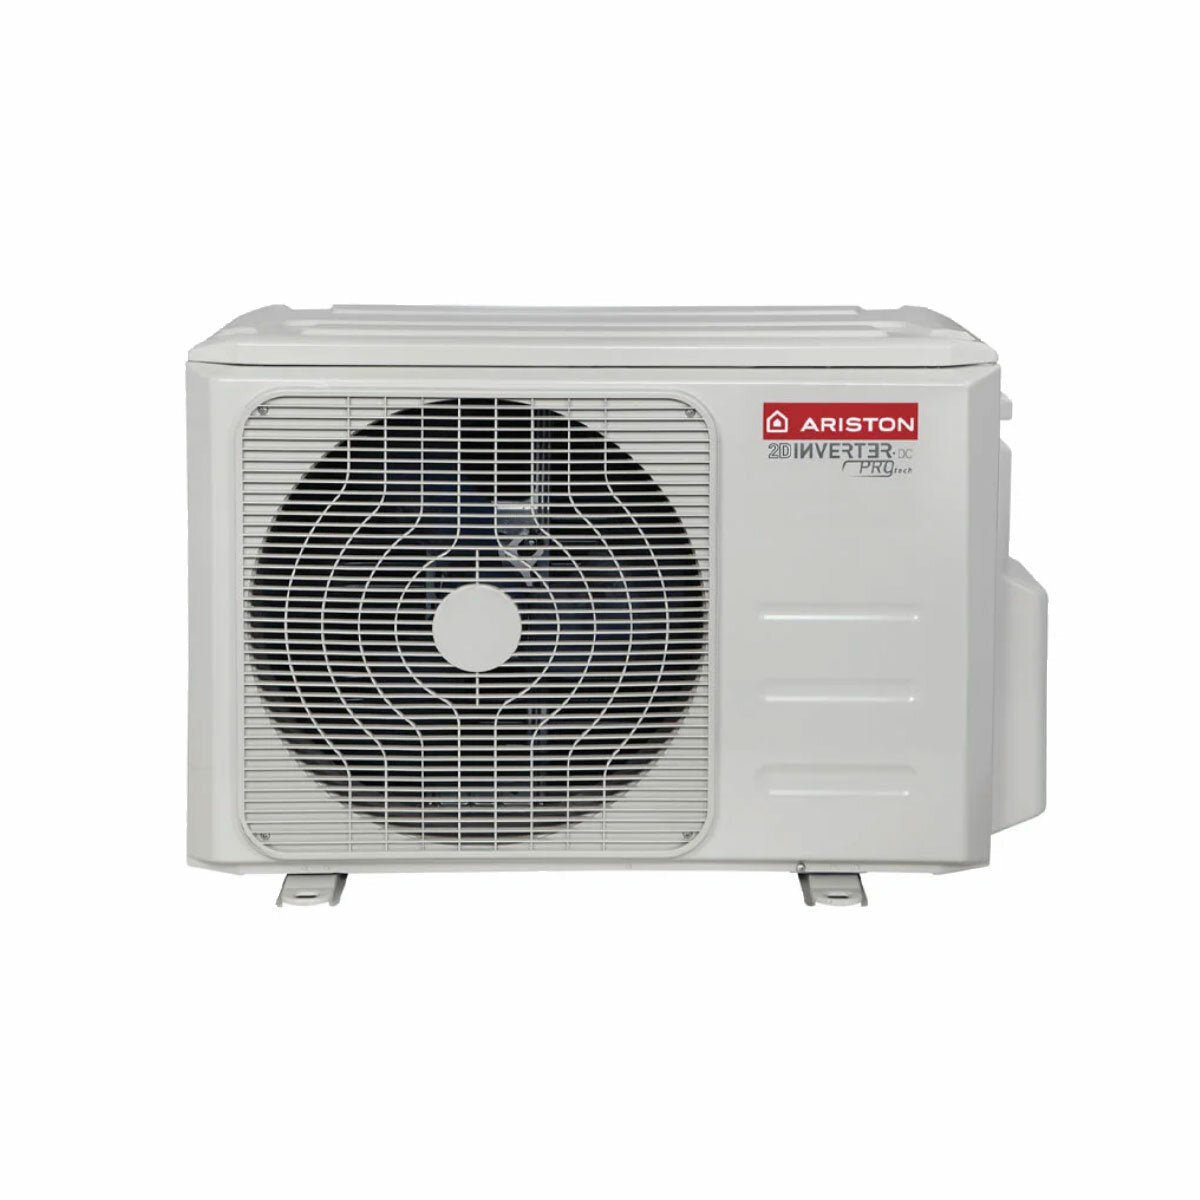 Ariston PRIOS R32 dual split air conditioner 9000 + 18000 BTU inverter A + 5.0 kW outdoor unit